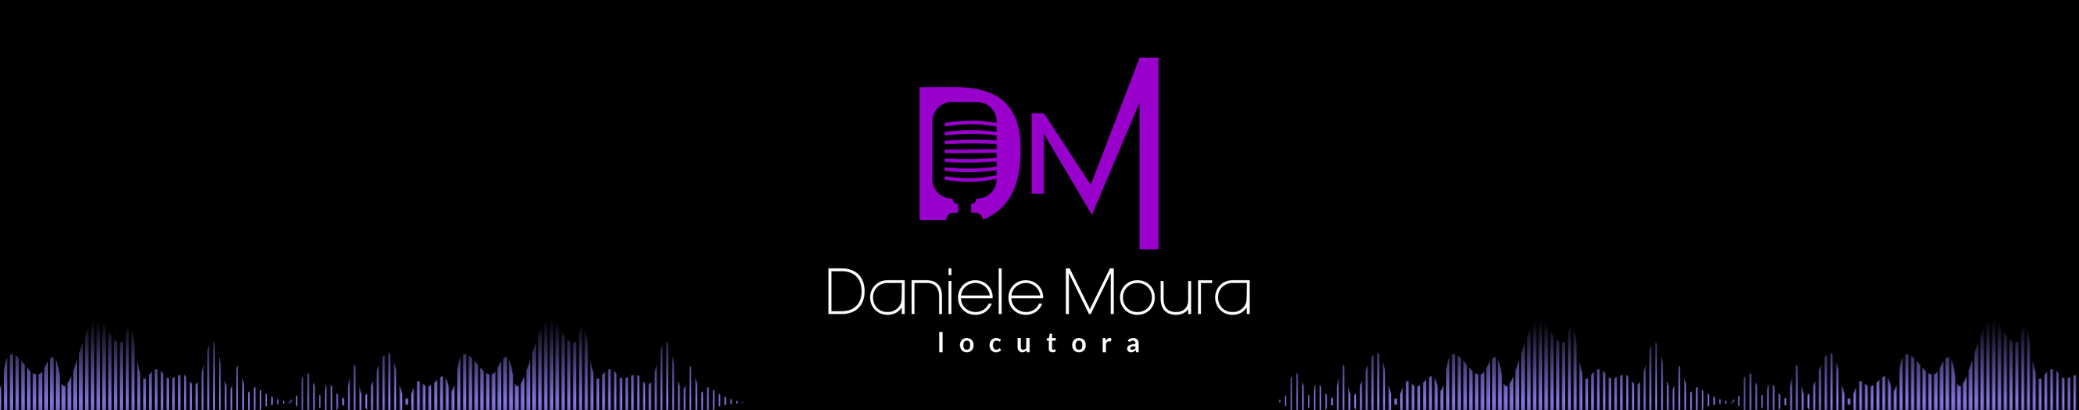 Daniele Moura's profile banner